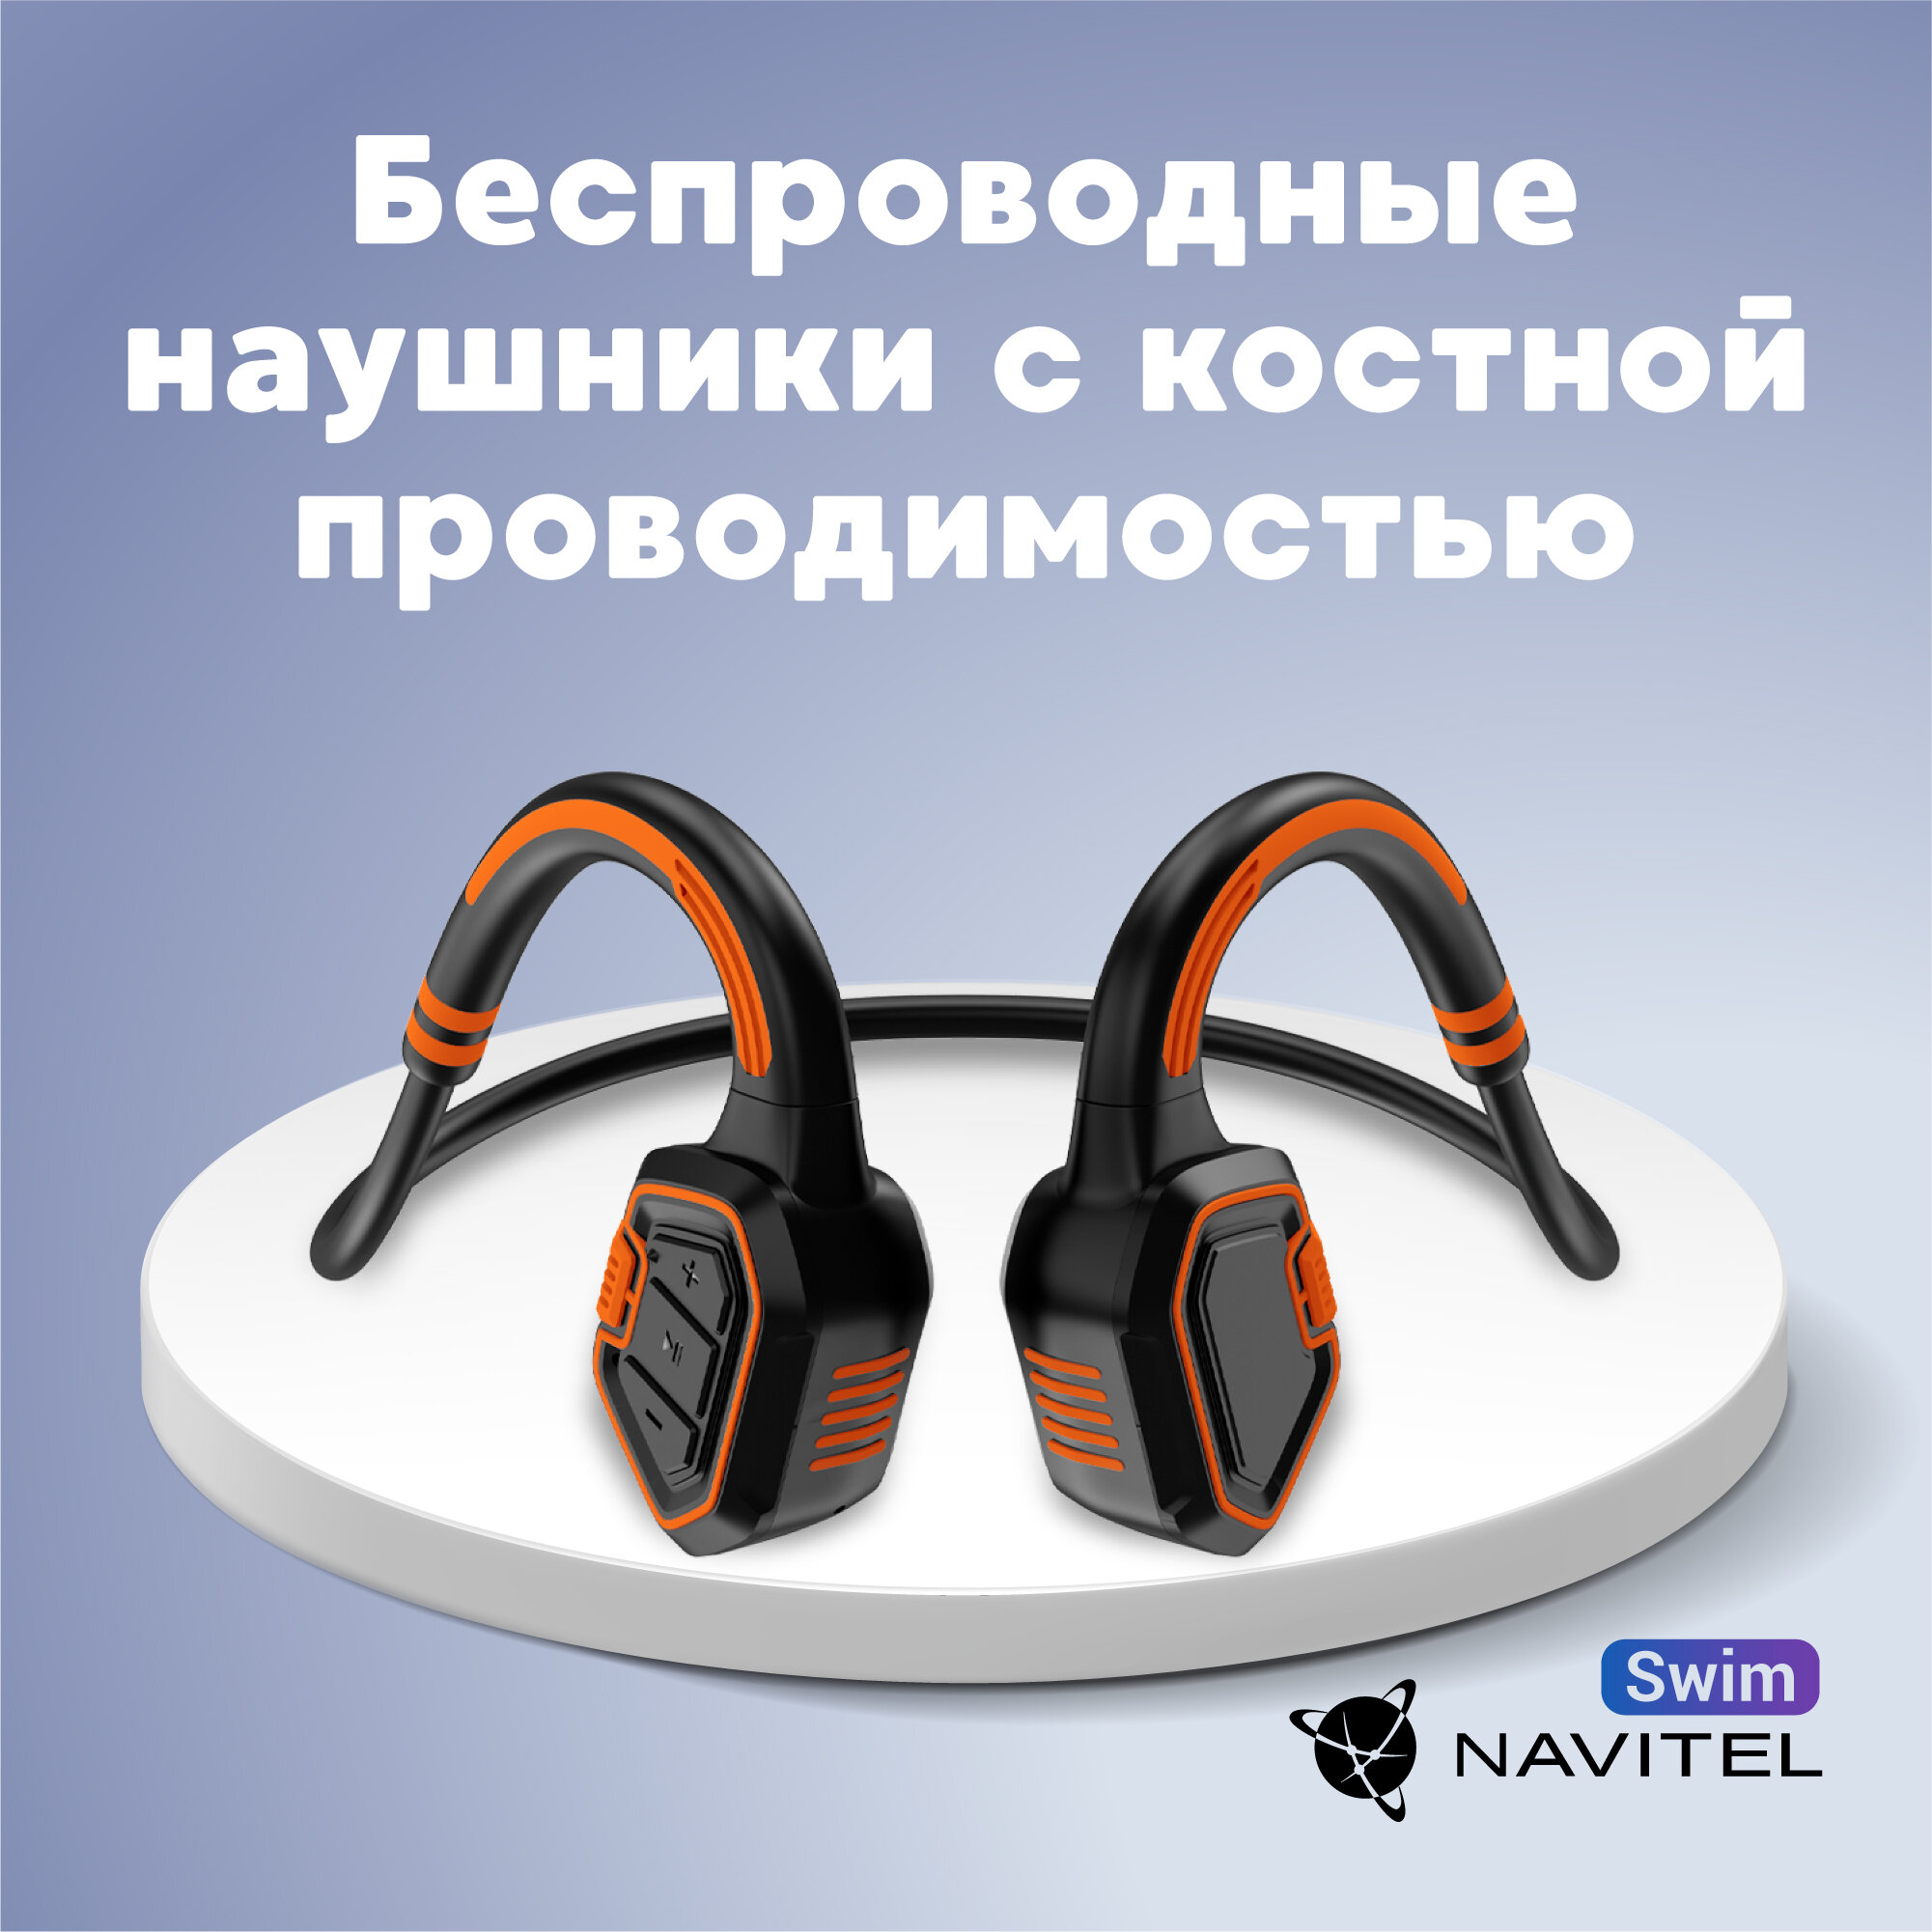 Наушники для плавания Navitel Swim с костной проводимостью и MP3-плеером (оранжевые)